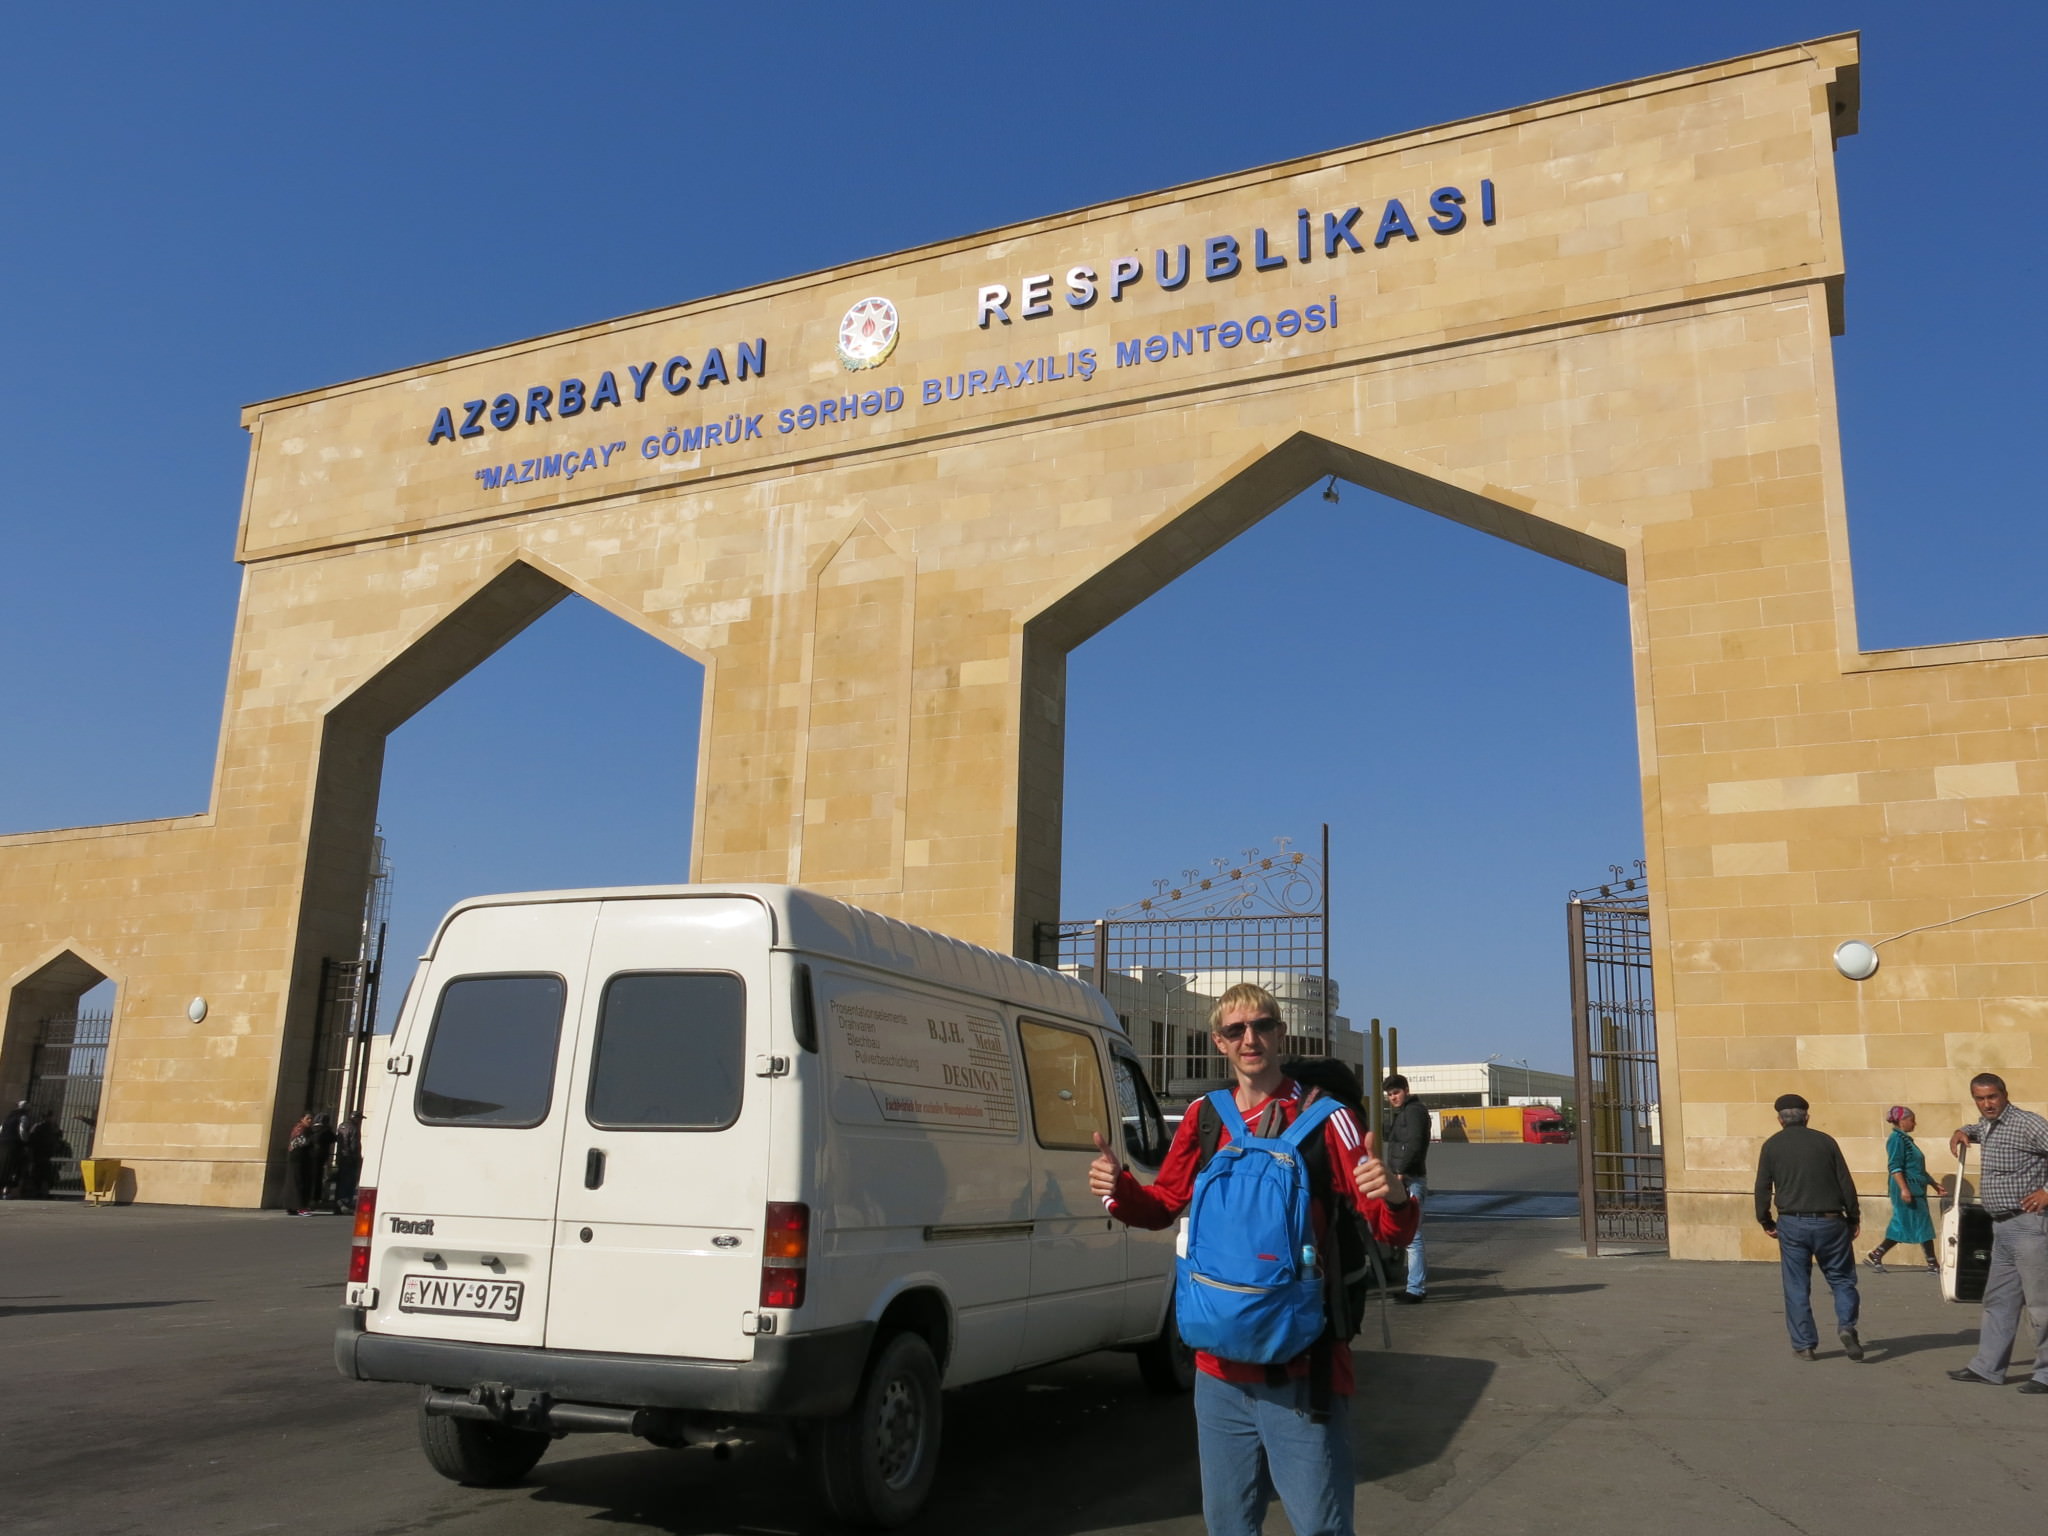 سفر زمینی به باکو با ماشین شخصی